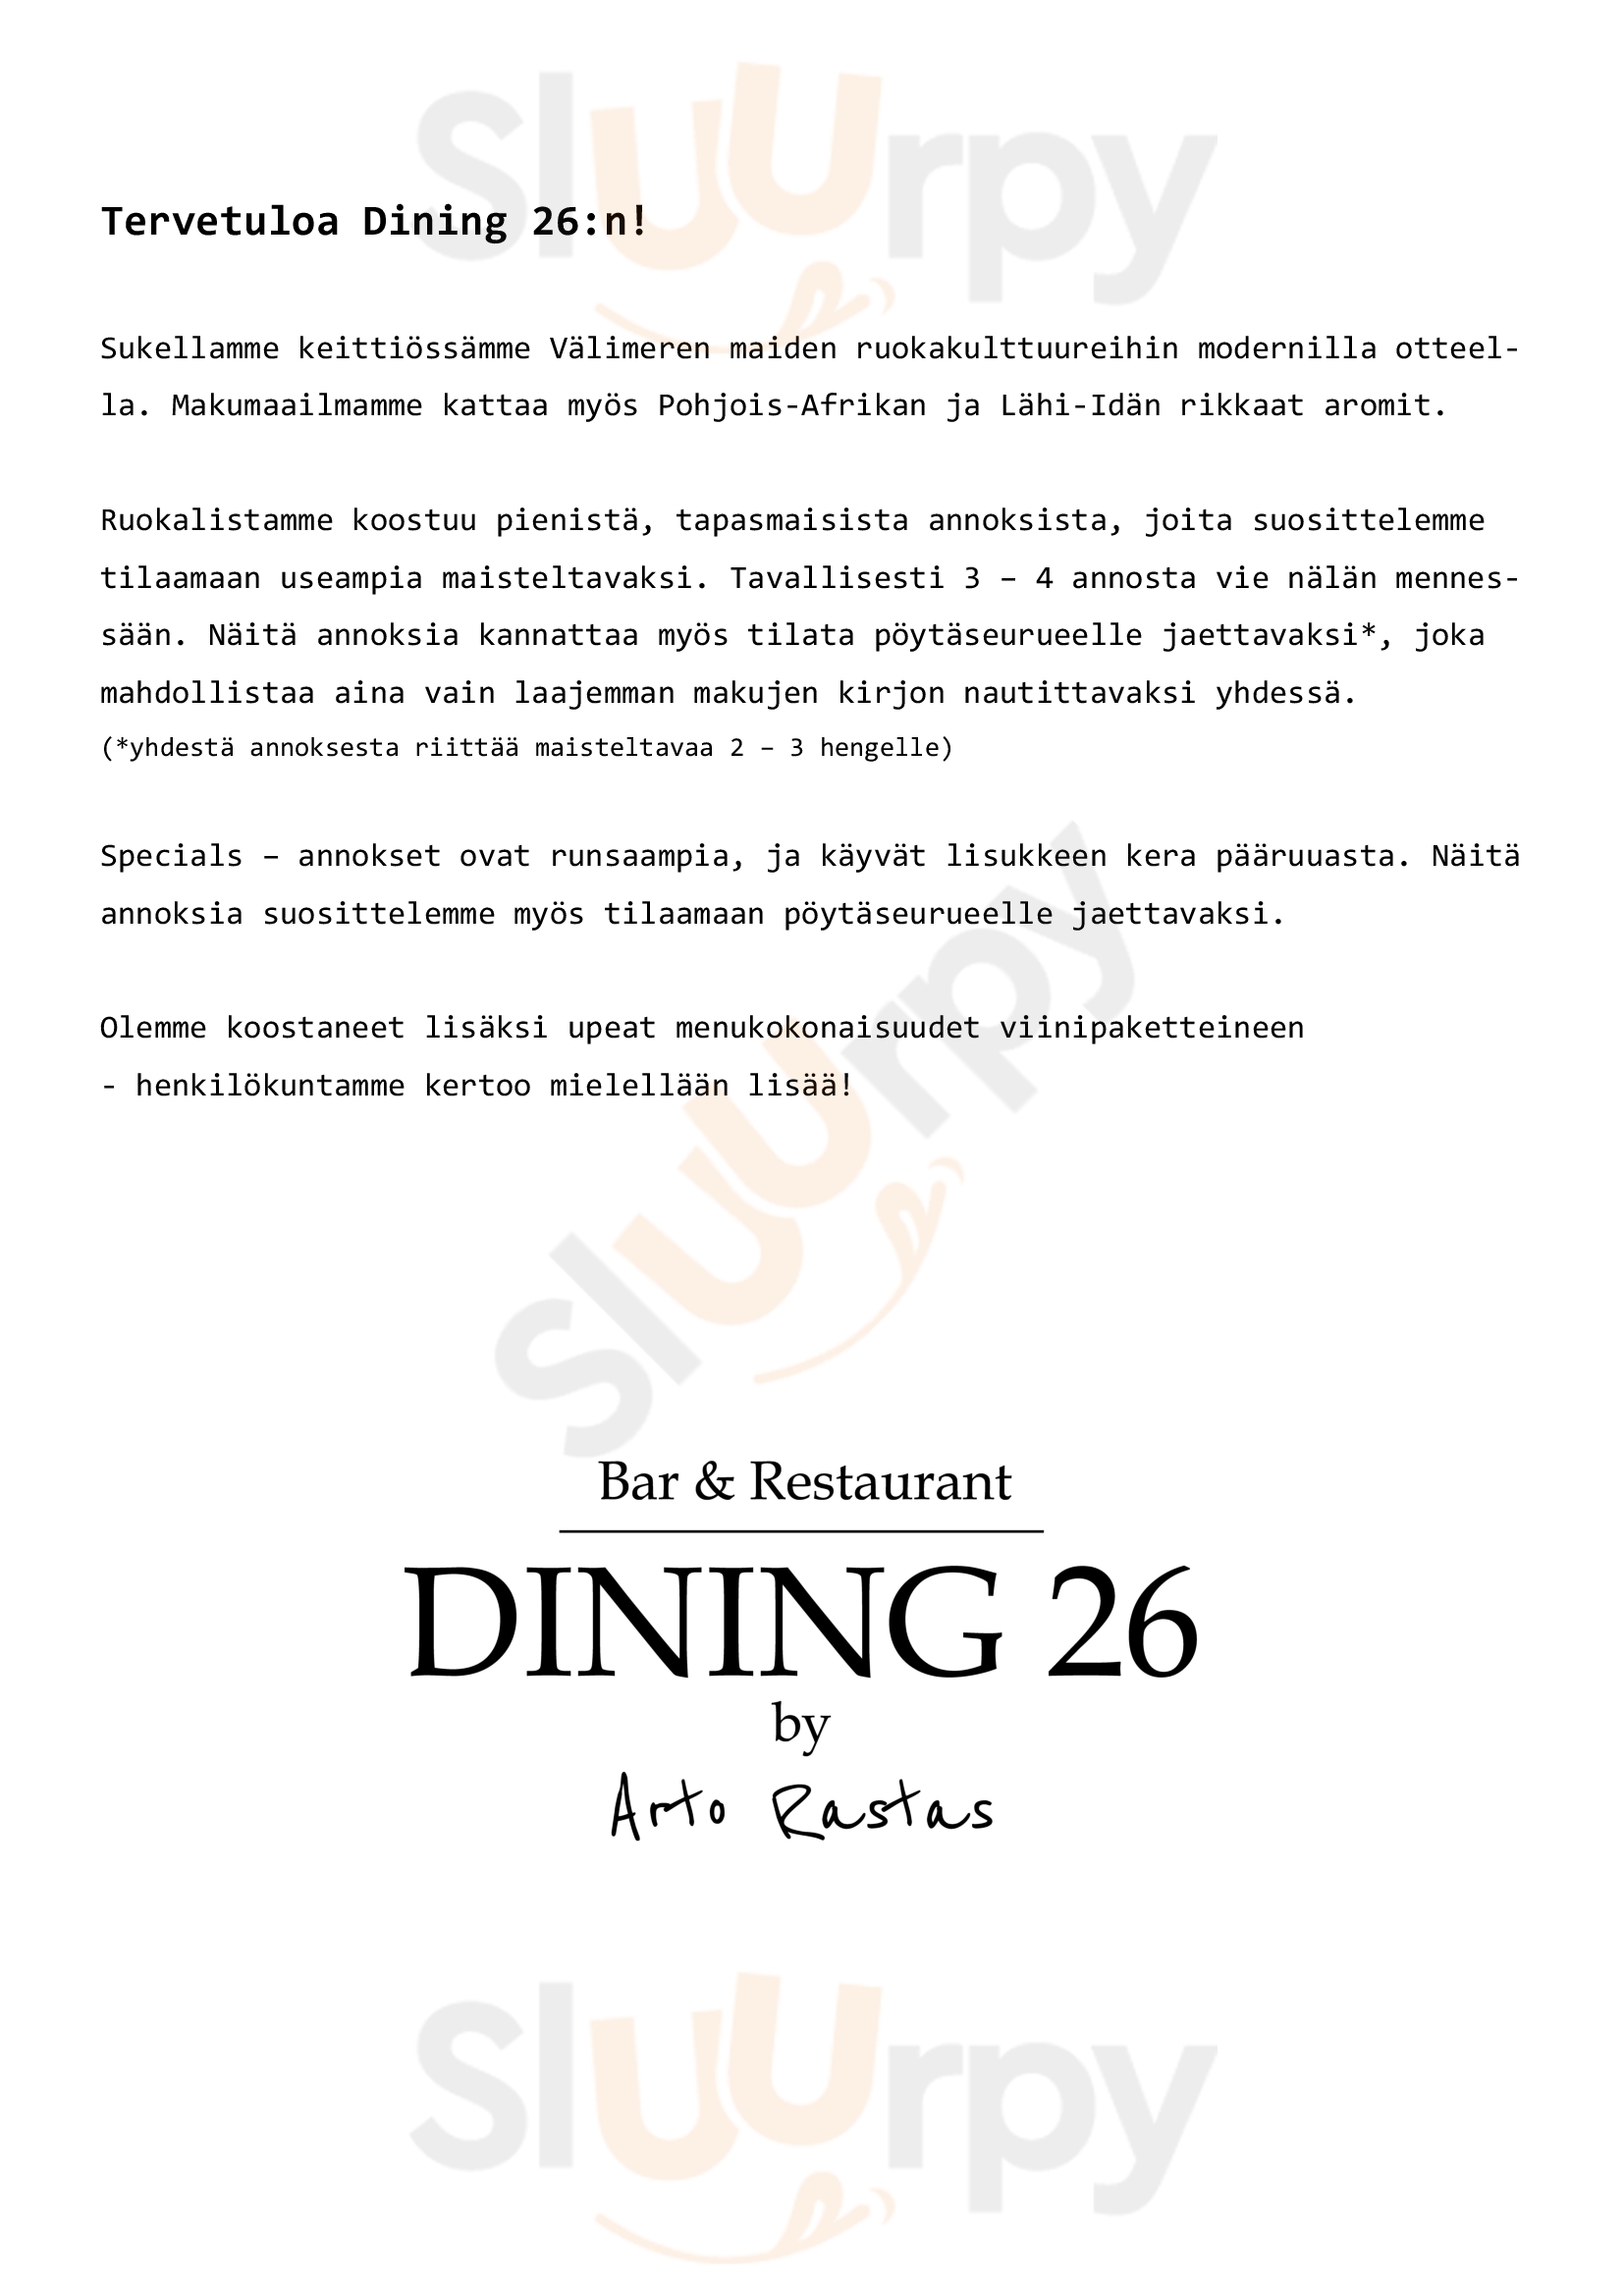 Dining 26 By Arto Rastas Tampere Menu - 1